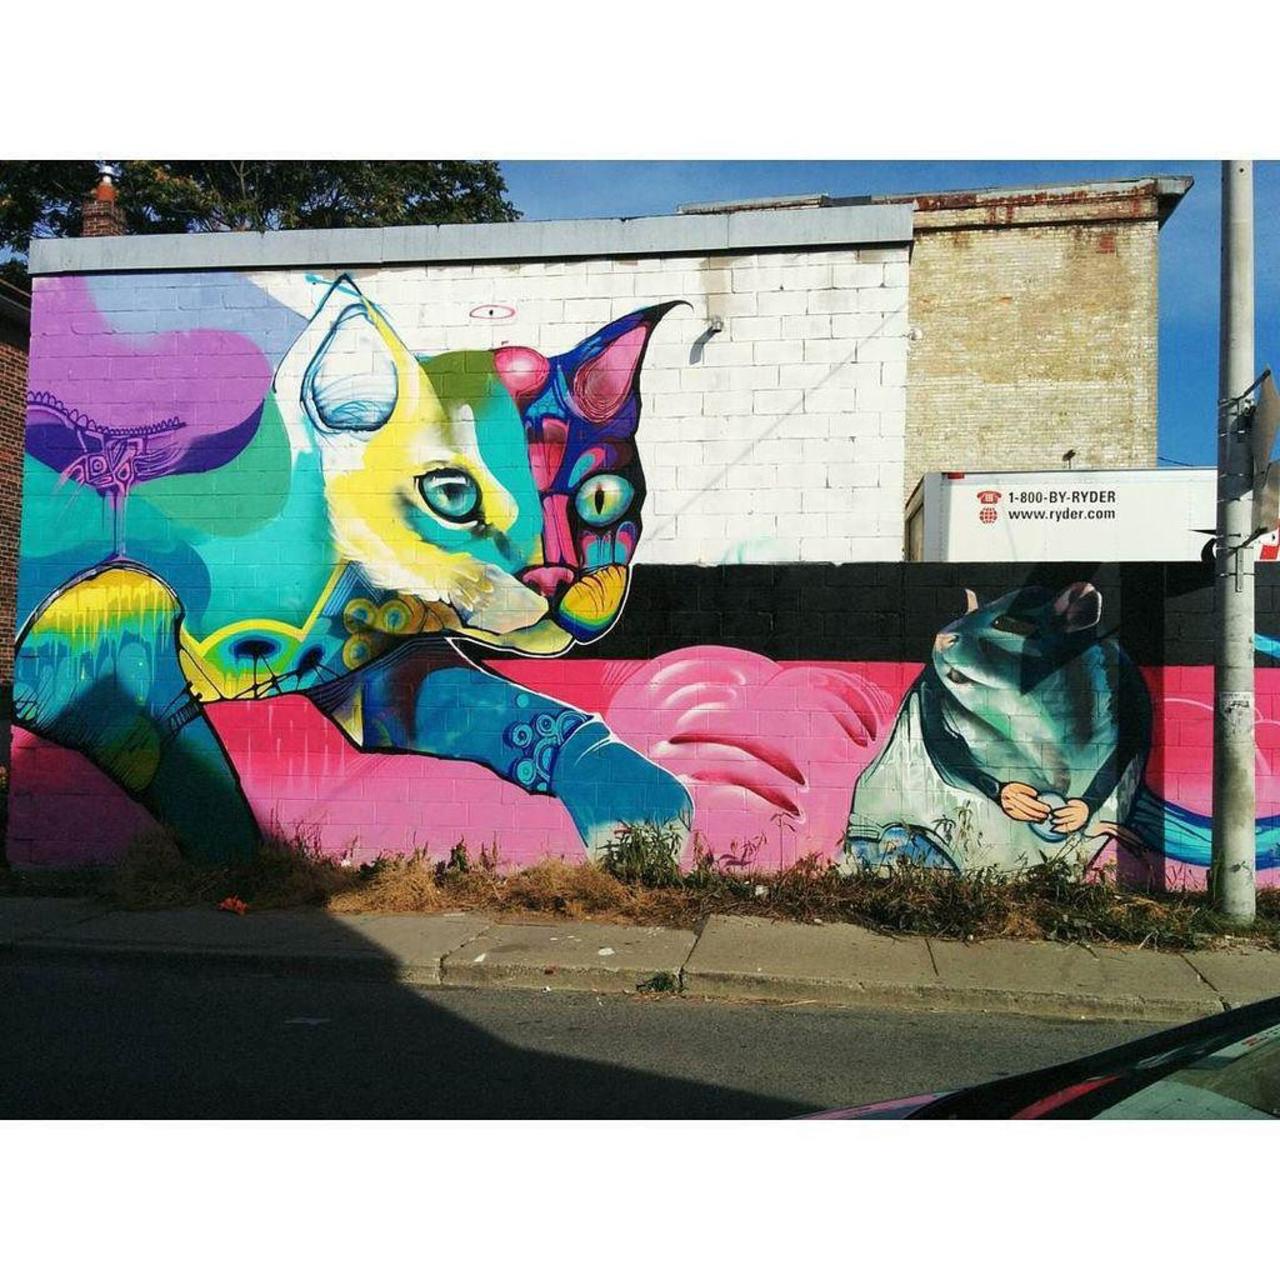 #Toronto #streetart #graffiti #art #tdot #urban #love #cat #mouse http://ift.tt/1O0Jivd http://t.co/lxPJTyYwLg